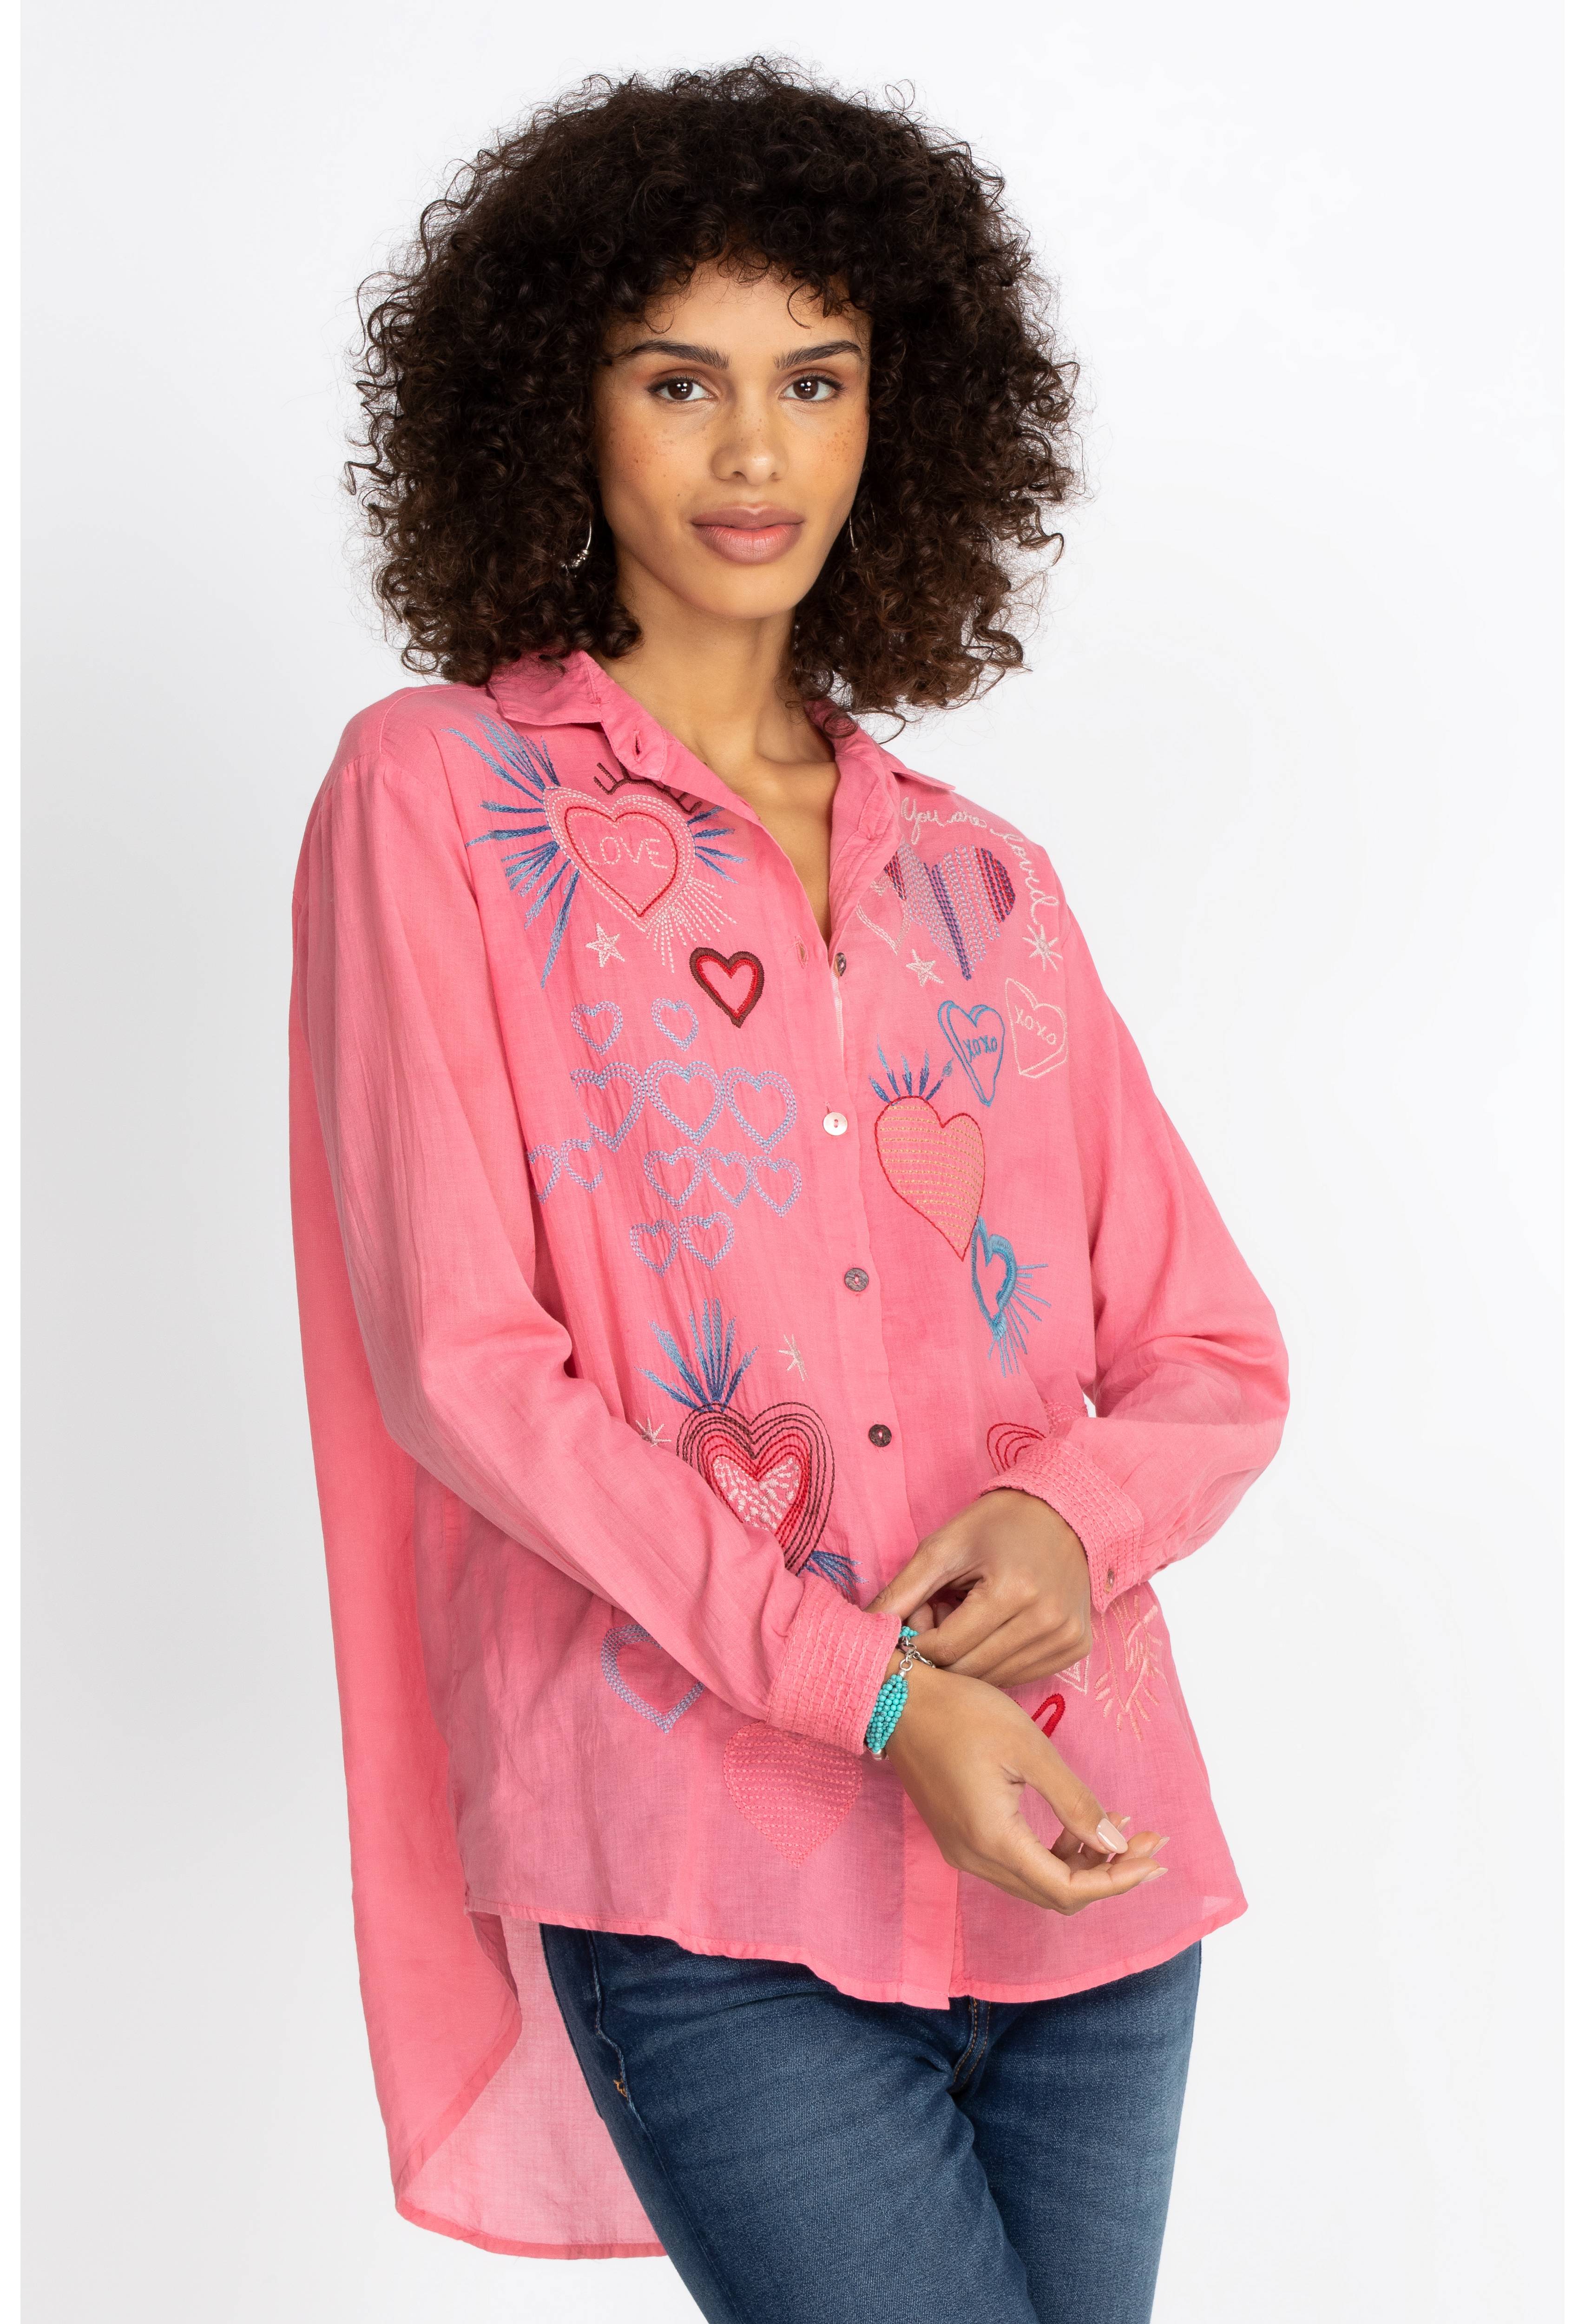 Amour Oversized Shirt, , large image number 1